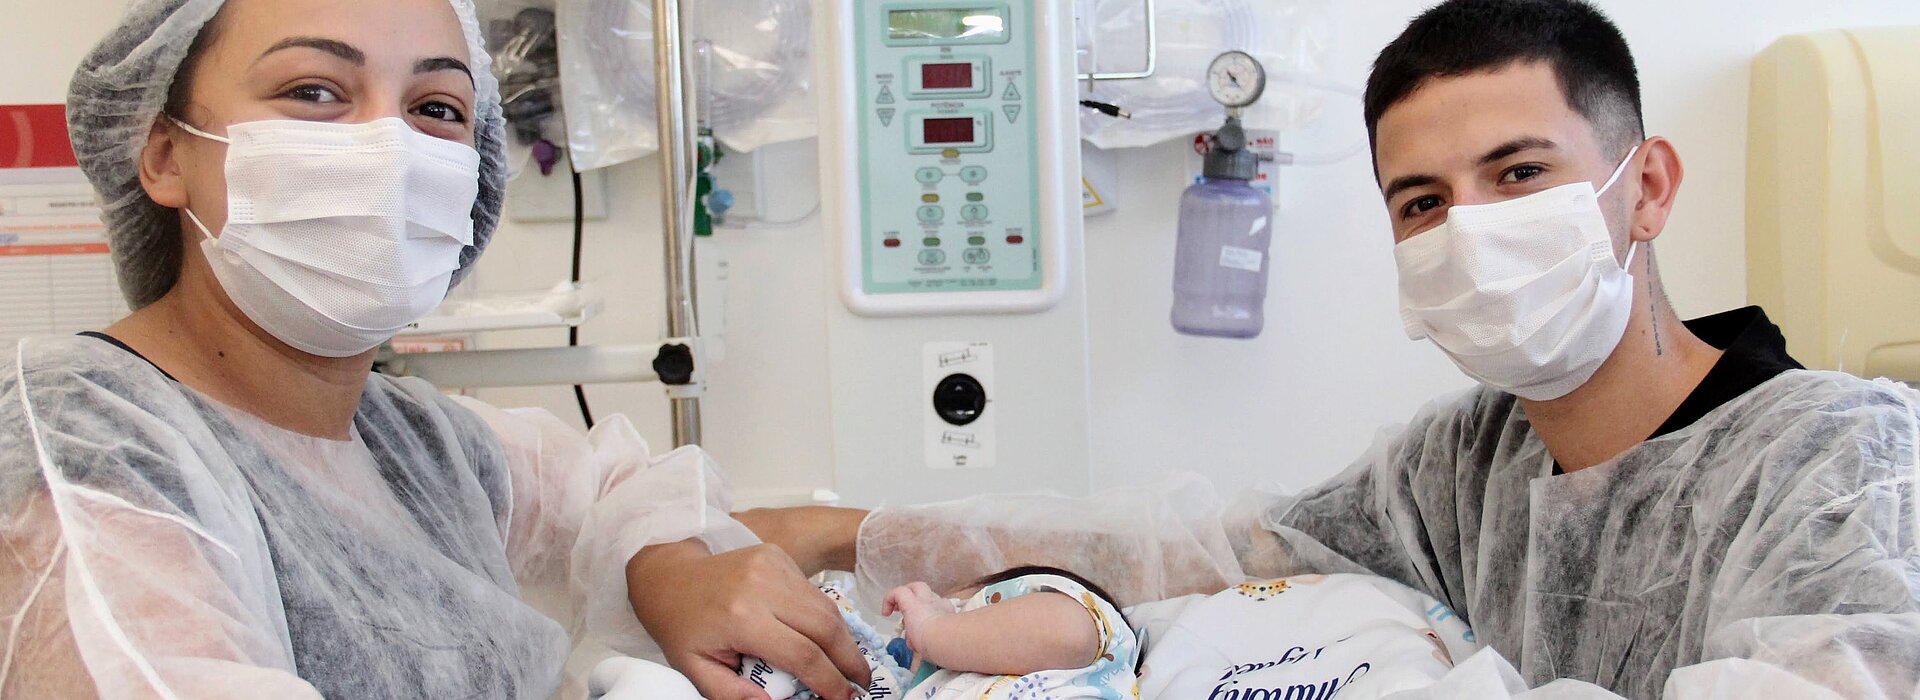 Hospital Evangélico Mackenzie realiza três transplantes diferentes